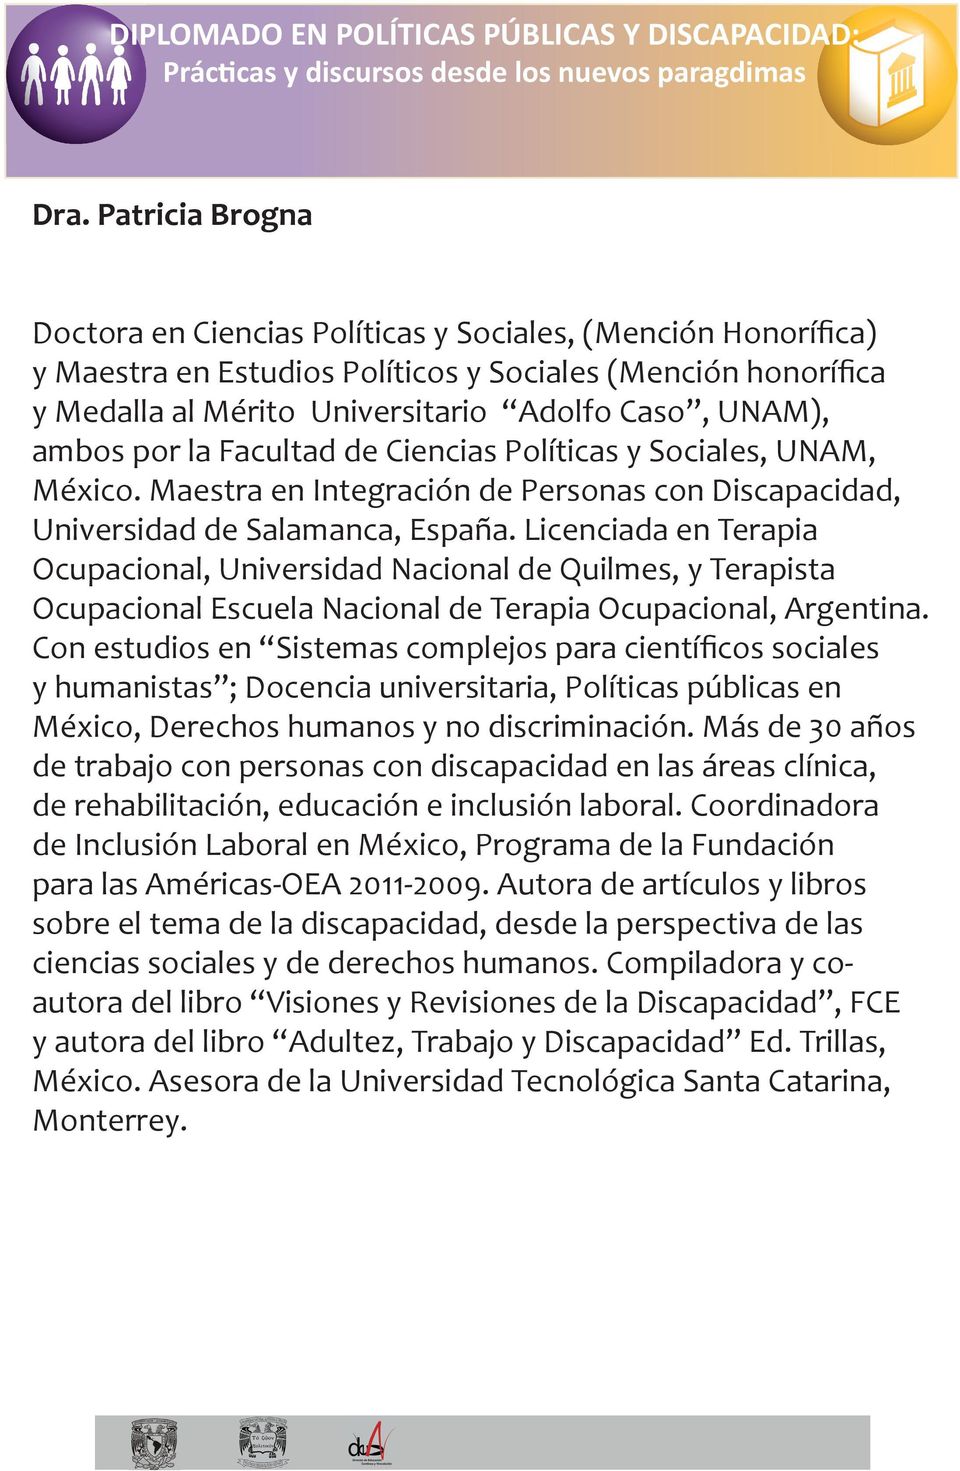 Licenciada en Terapia Ocupacional, Universidad Nacional de Quilmes, y Terapista Ocupacional Escuela Nacional de Terapia Ocupacional, Argentina.